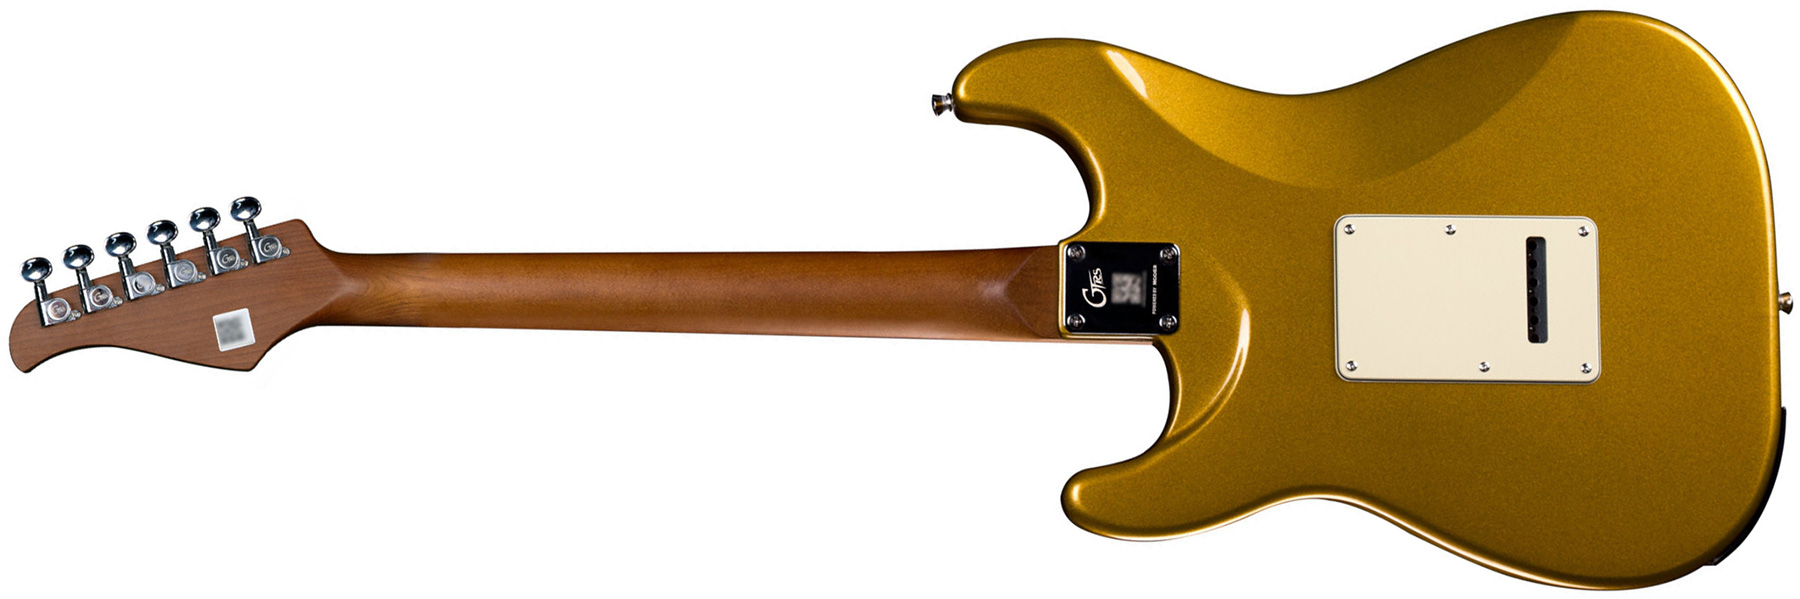 Mooer Gtrs S800 Hss Trem Rw - Gold - Guitare Électrique ModÉlisation & Midi - Variation 1